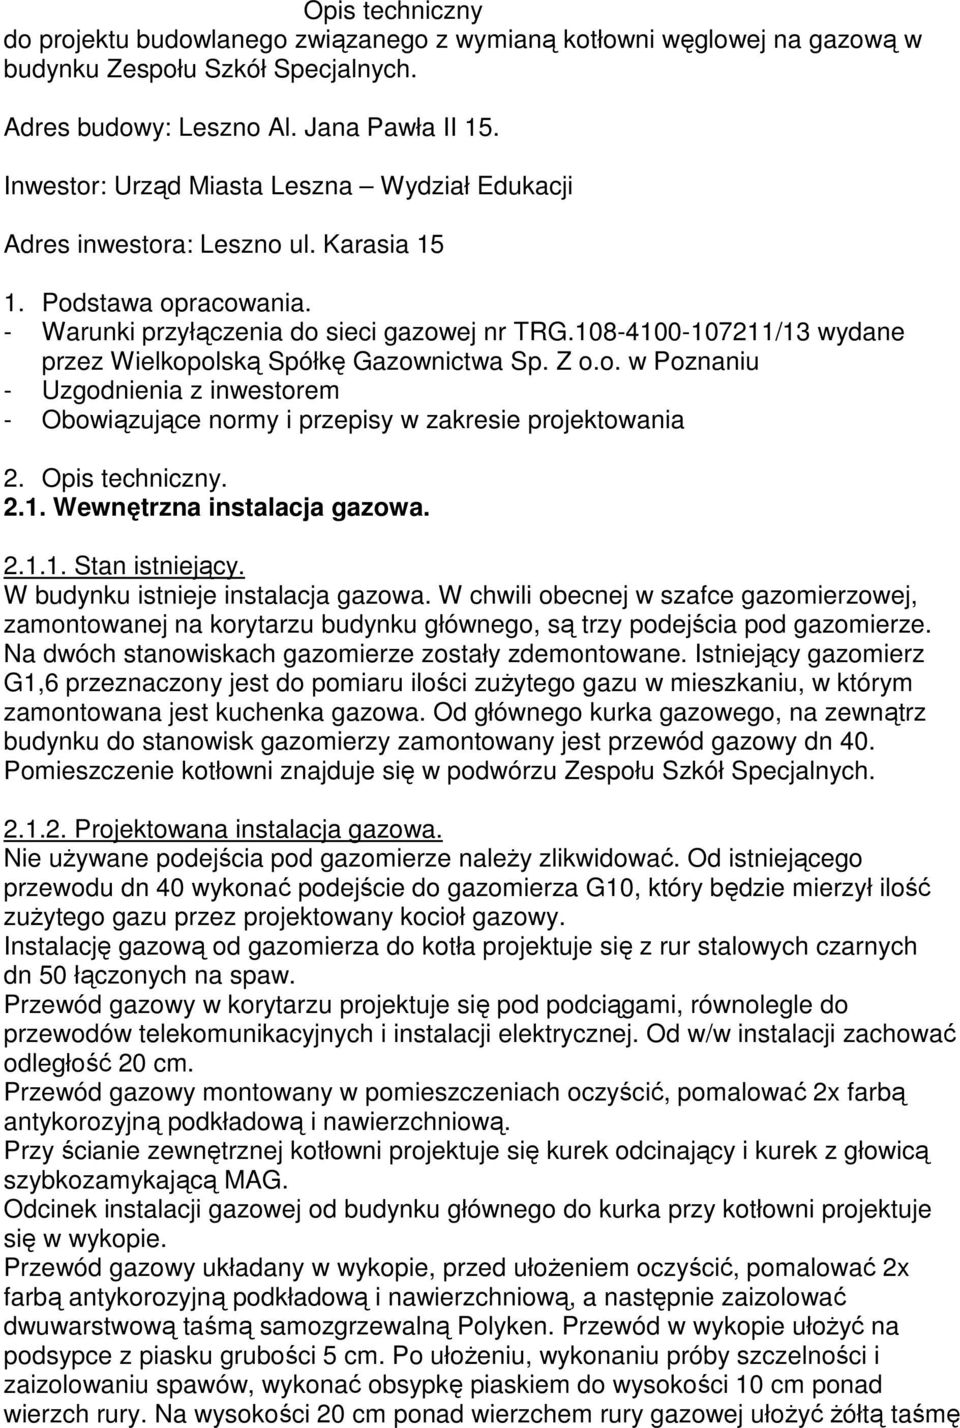 108-4100-107211/13 wydane przez Wielkopolską Spółkę Gazownictwa Sp. Z o.o. w Poznaniu - Uzgodnienia z inwestorem - Obowiązujące normy i przepisy w zakresie projektowania 2. Opis techniczny. 2.1. Wewnętrzna instalacja gazowa.